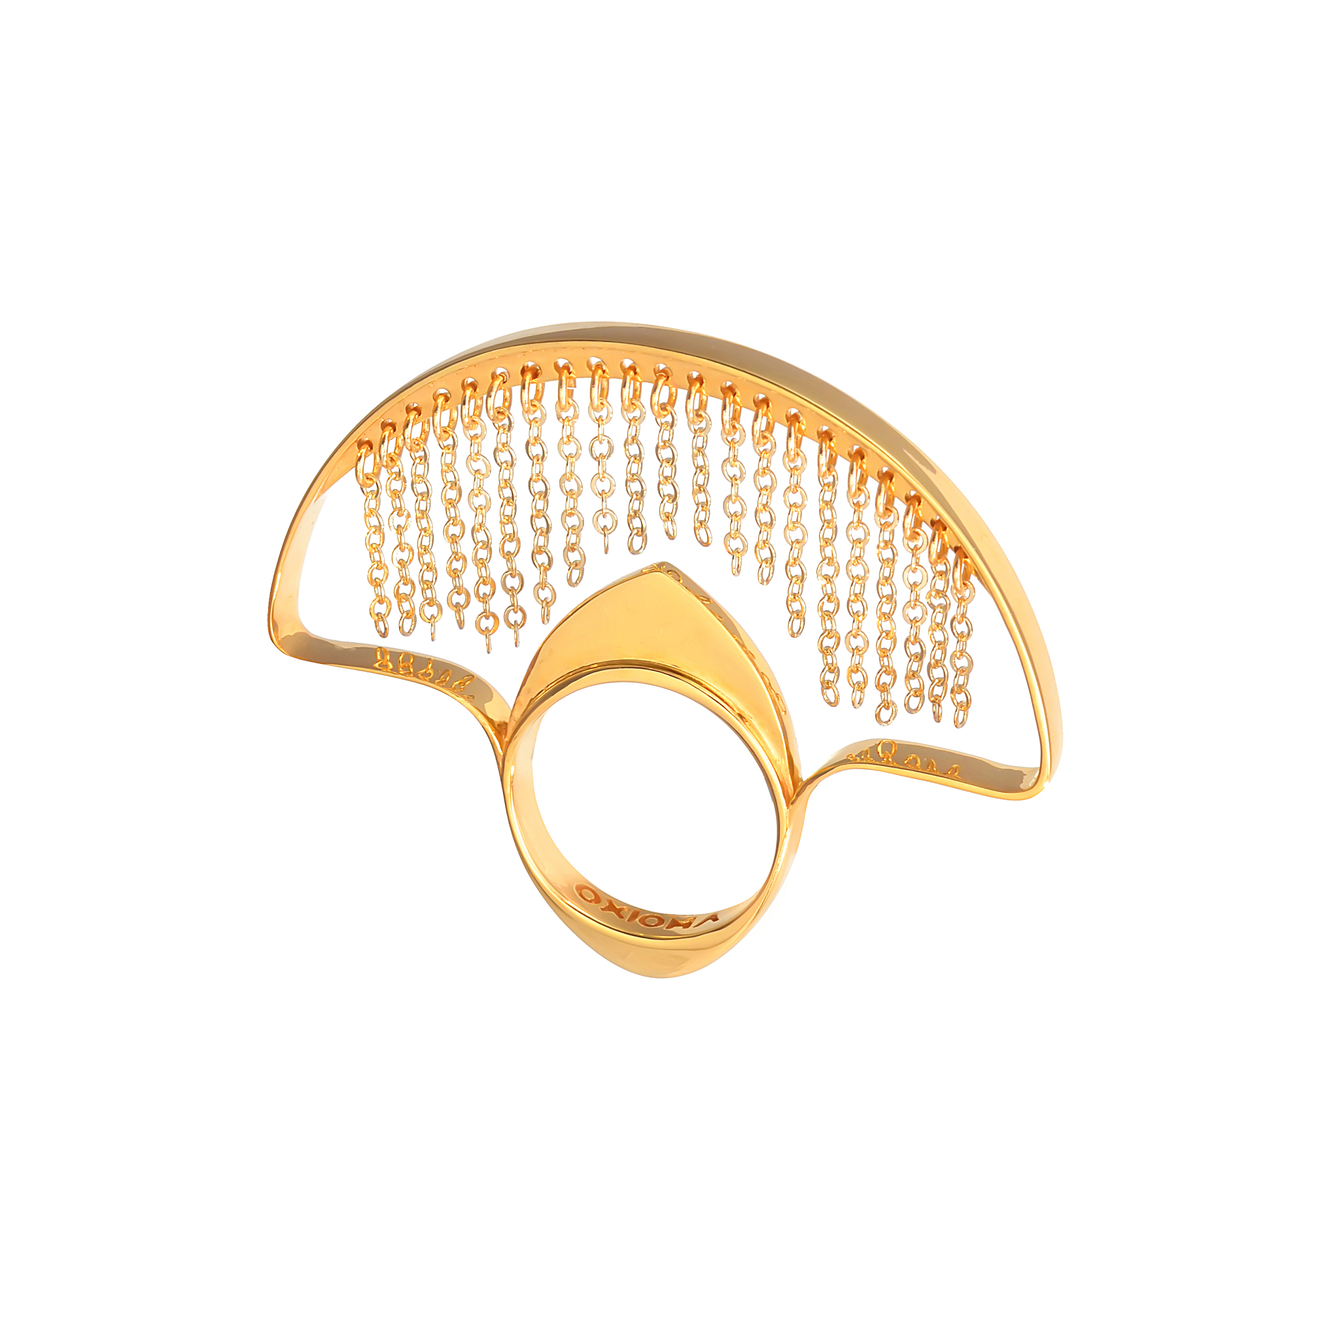 OXIOMA Покрытое золотом кольцо Воздух цена и фото